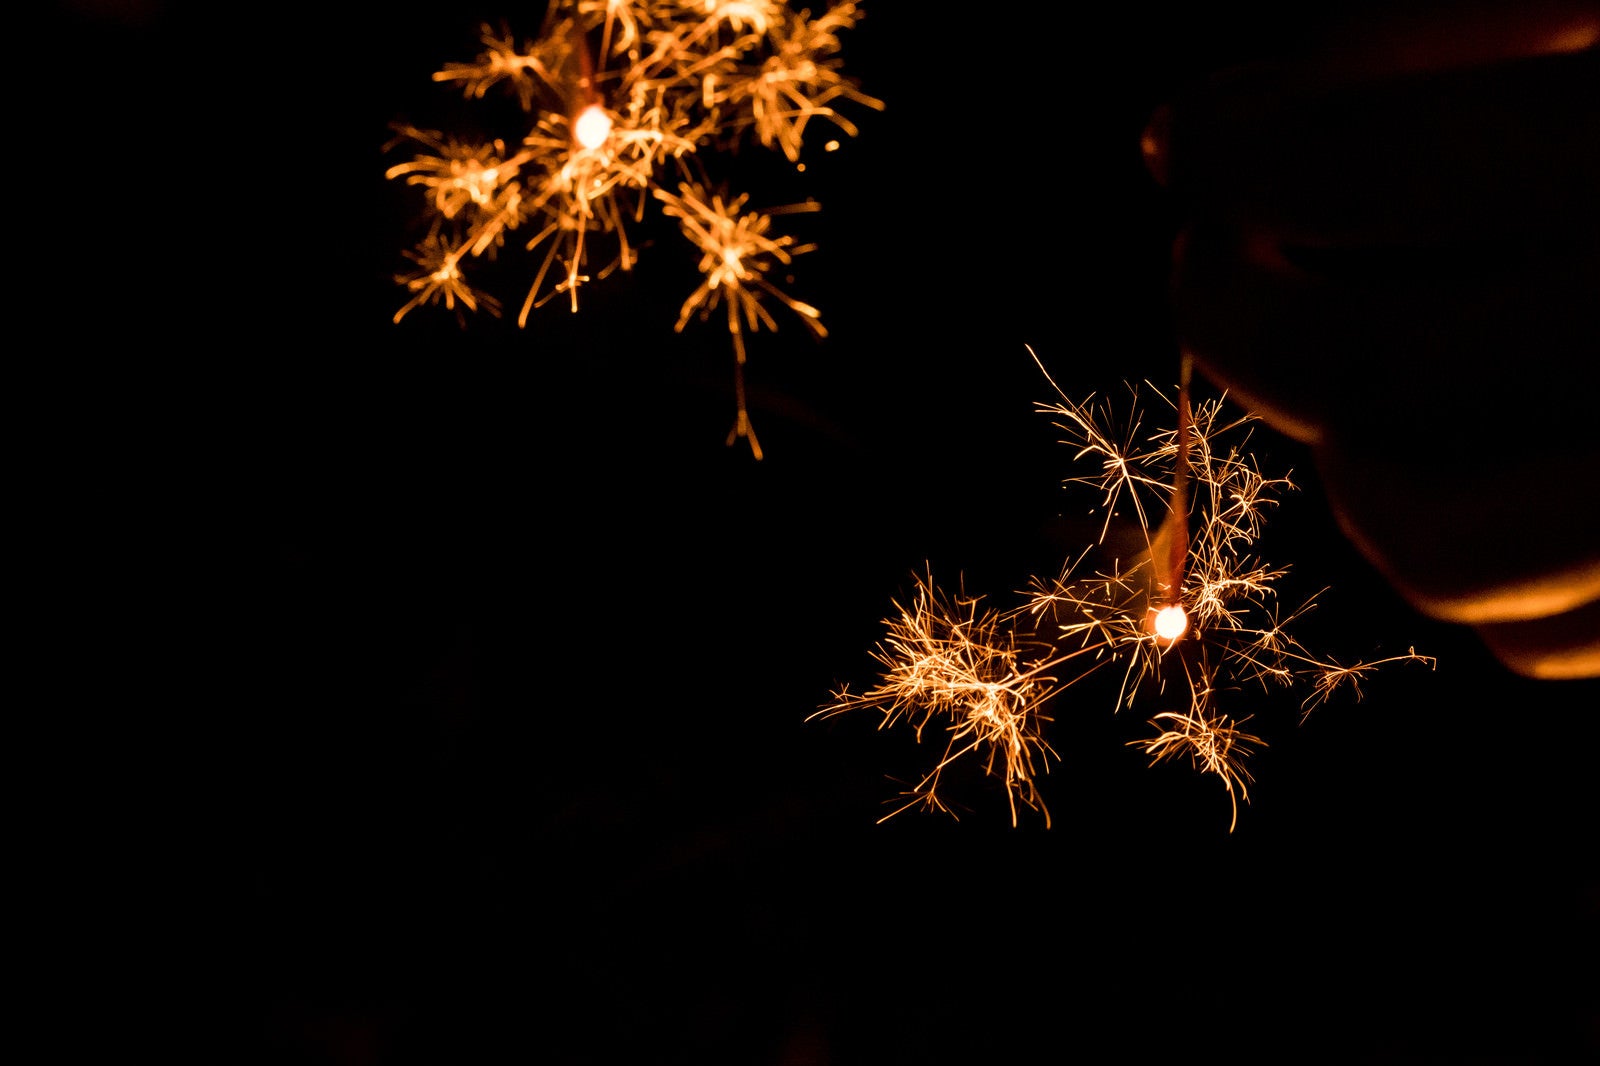 「夜は線香花火を楽しむ」の写真